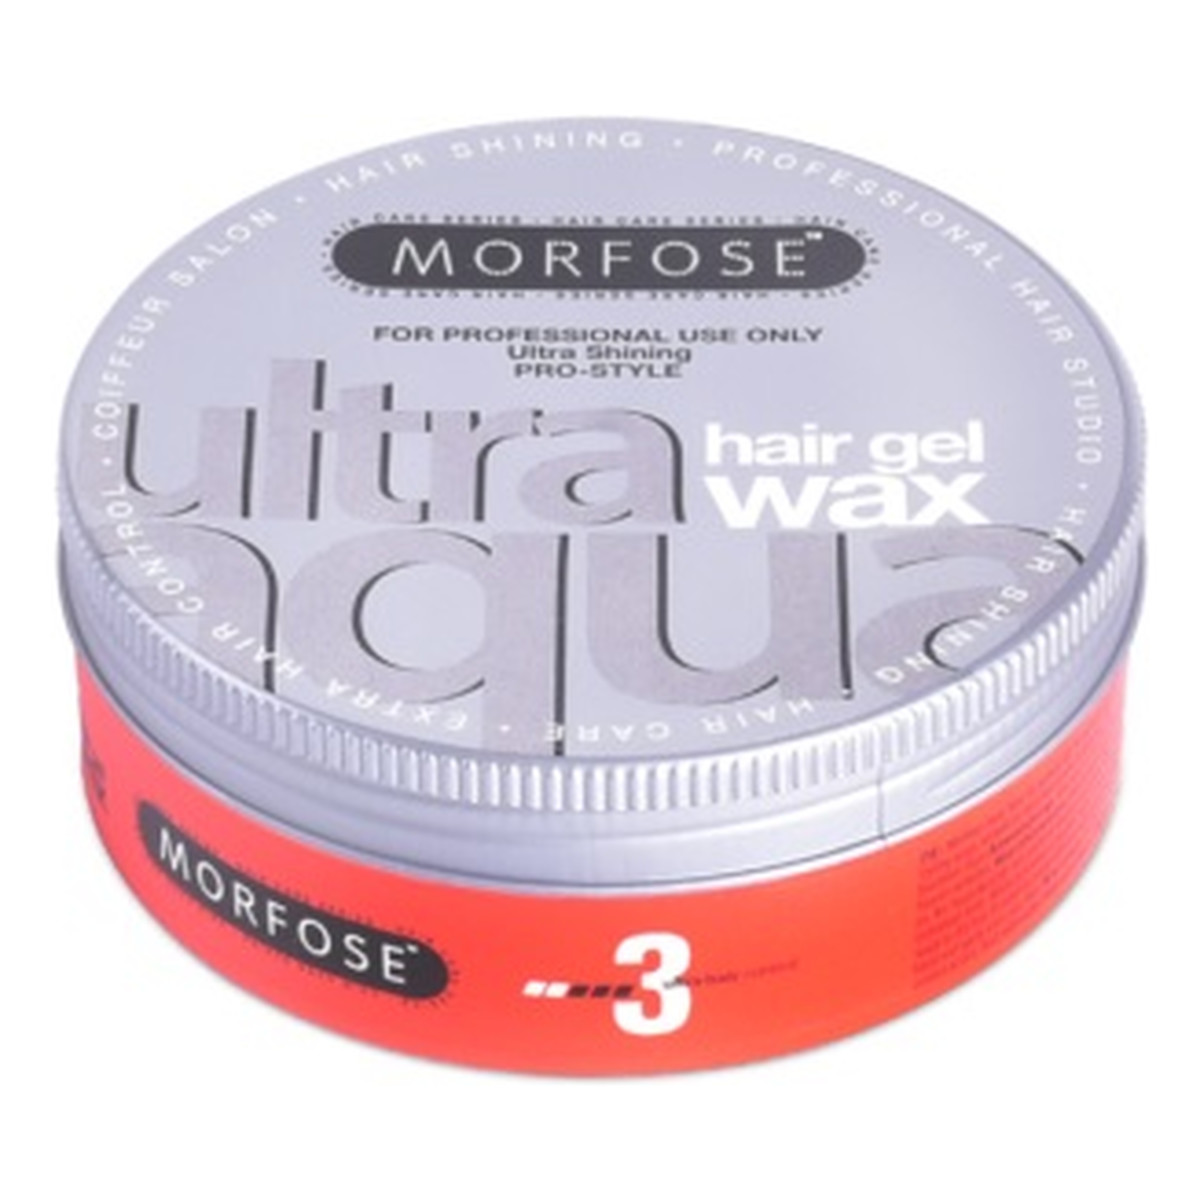 Morfose Ultra aqua gel hair styling wax wosk do stylizacji włosów o zapachu truskawki 150ml